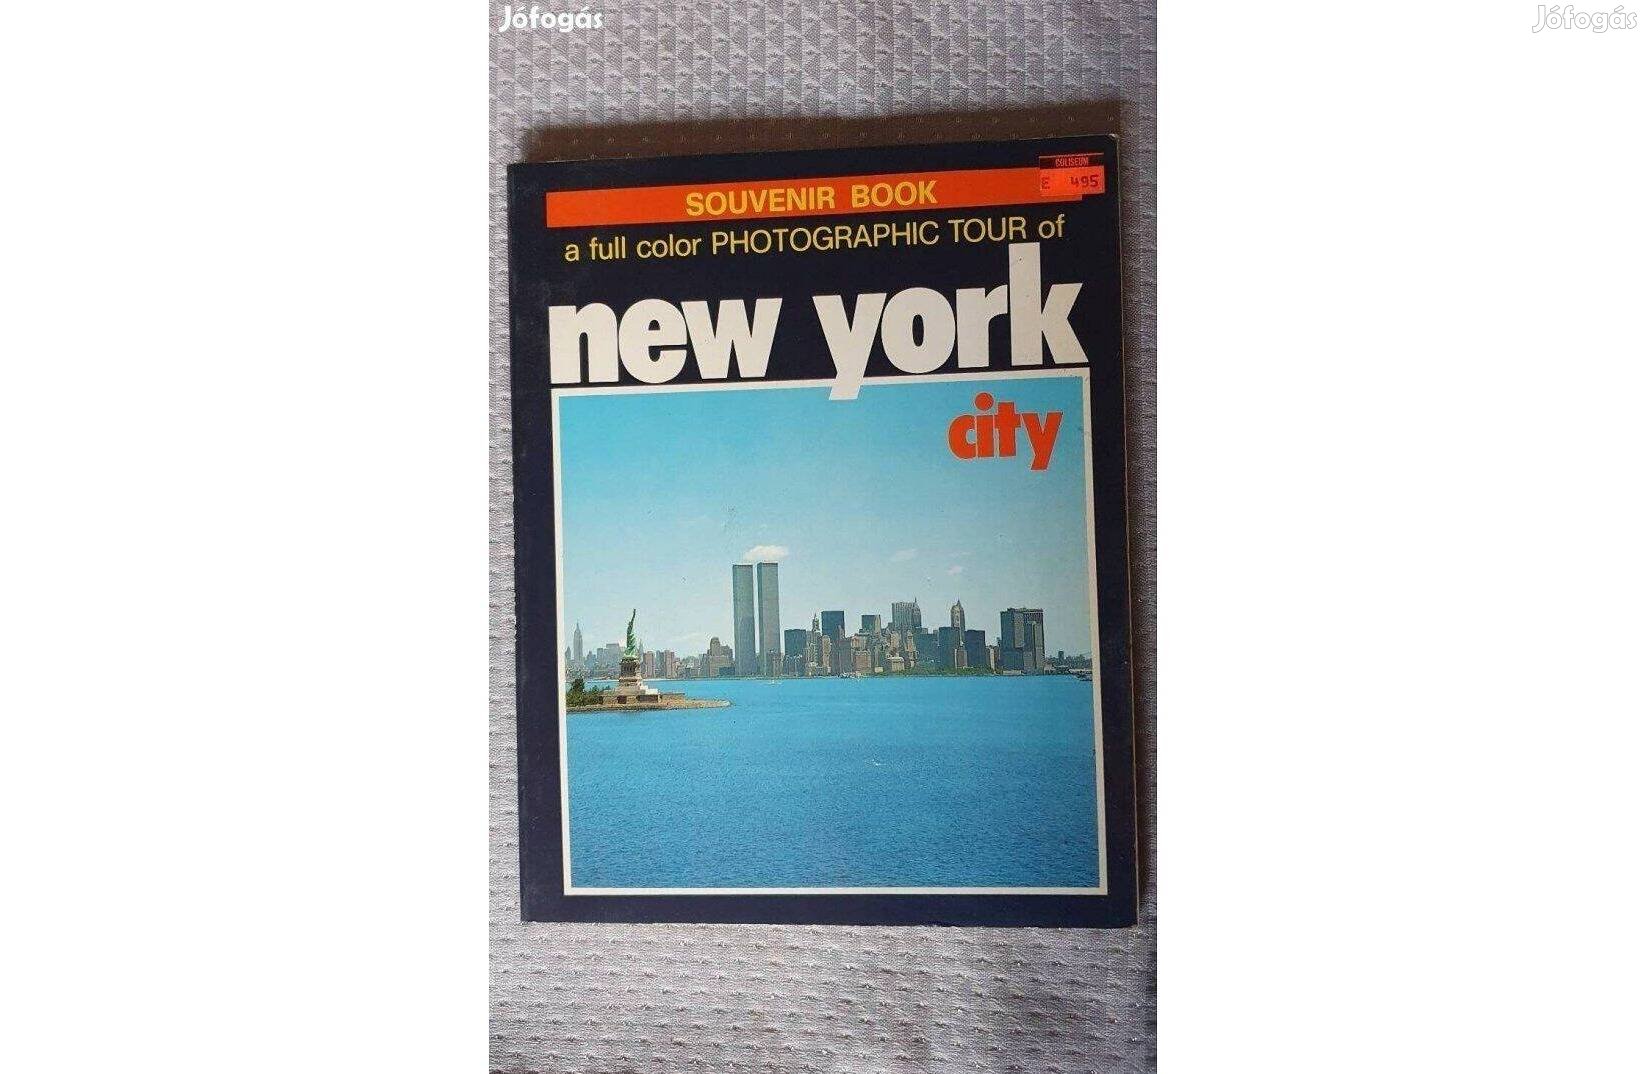 New York City souvenir book